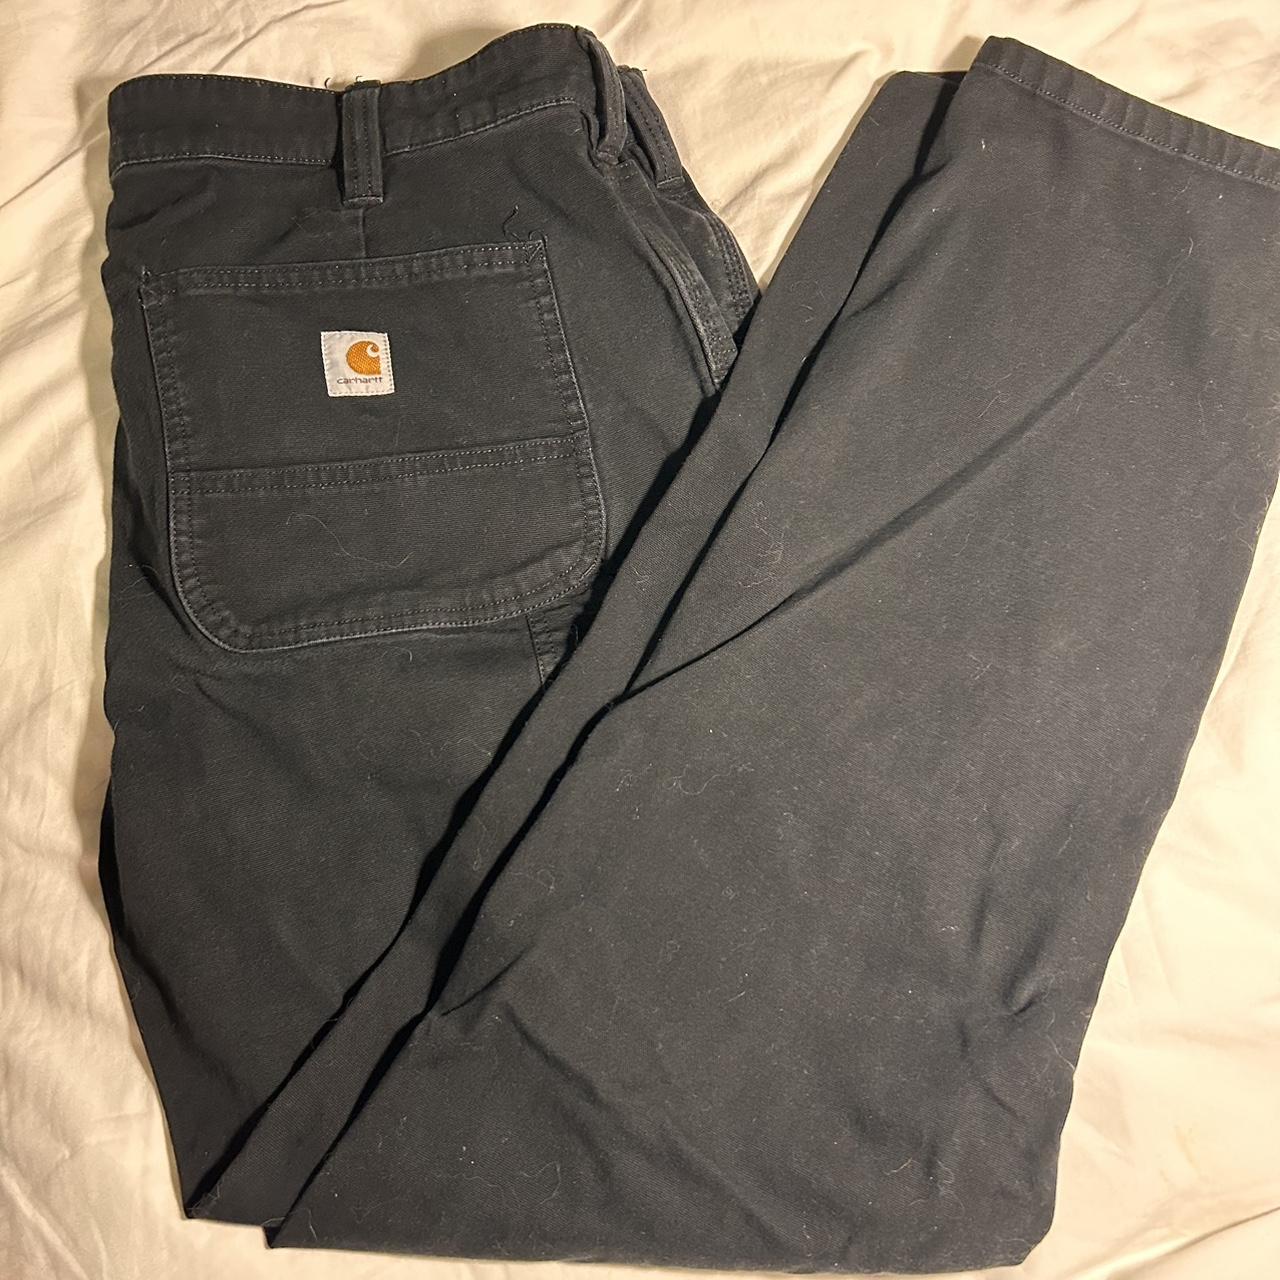 Size 14 original fit women's Carhartt work pants. - Depop